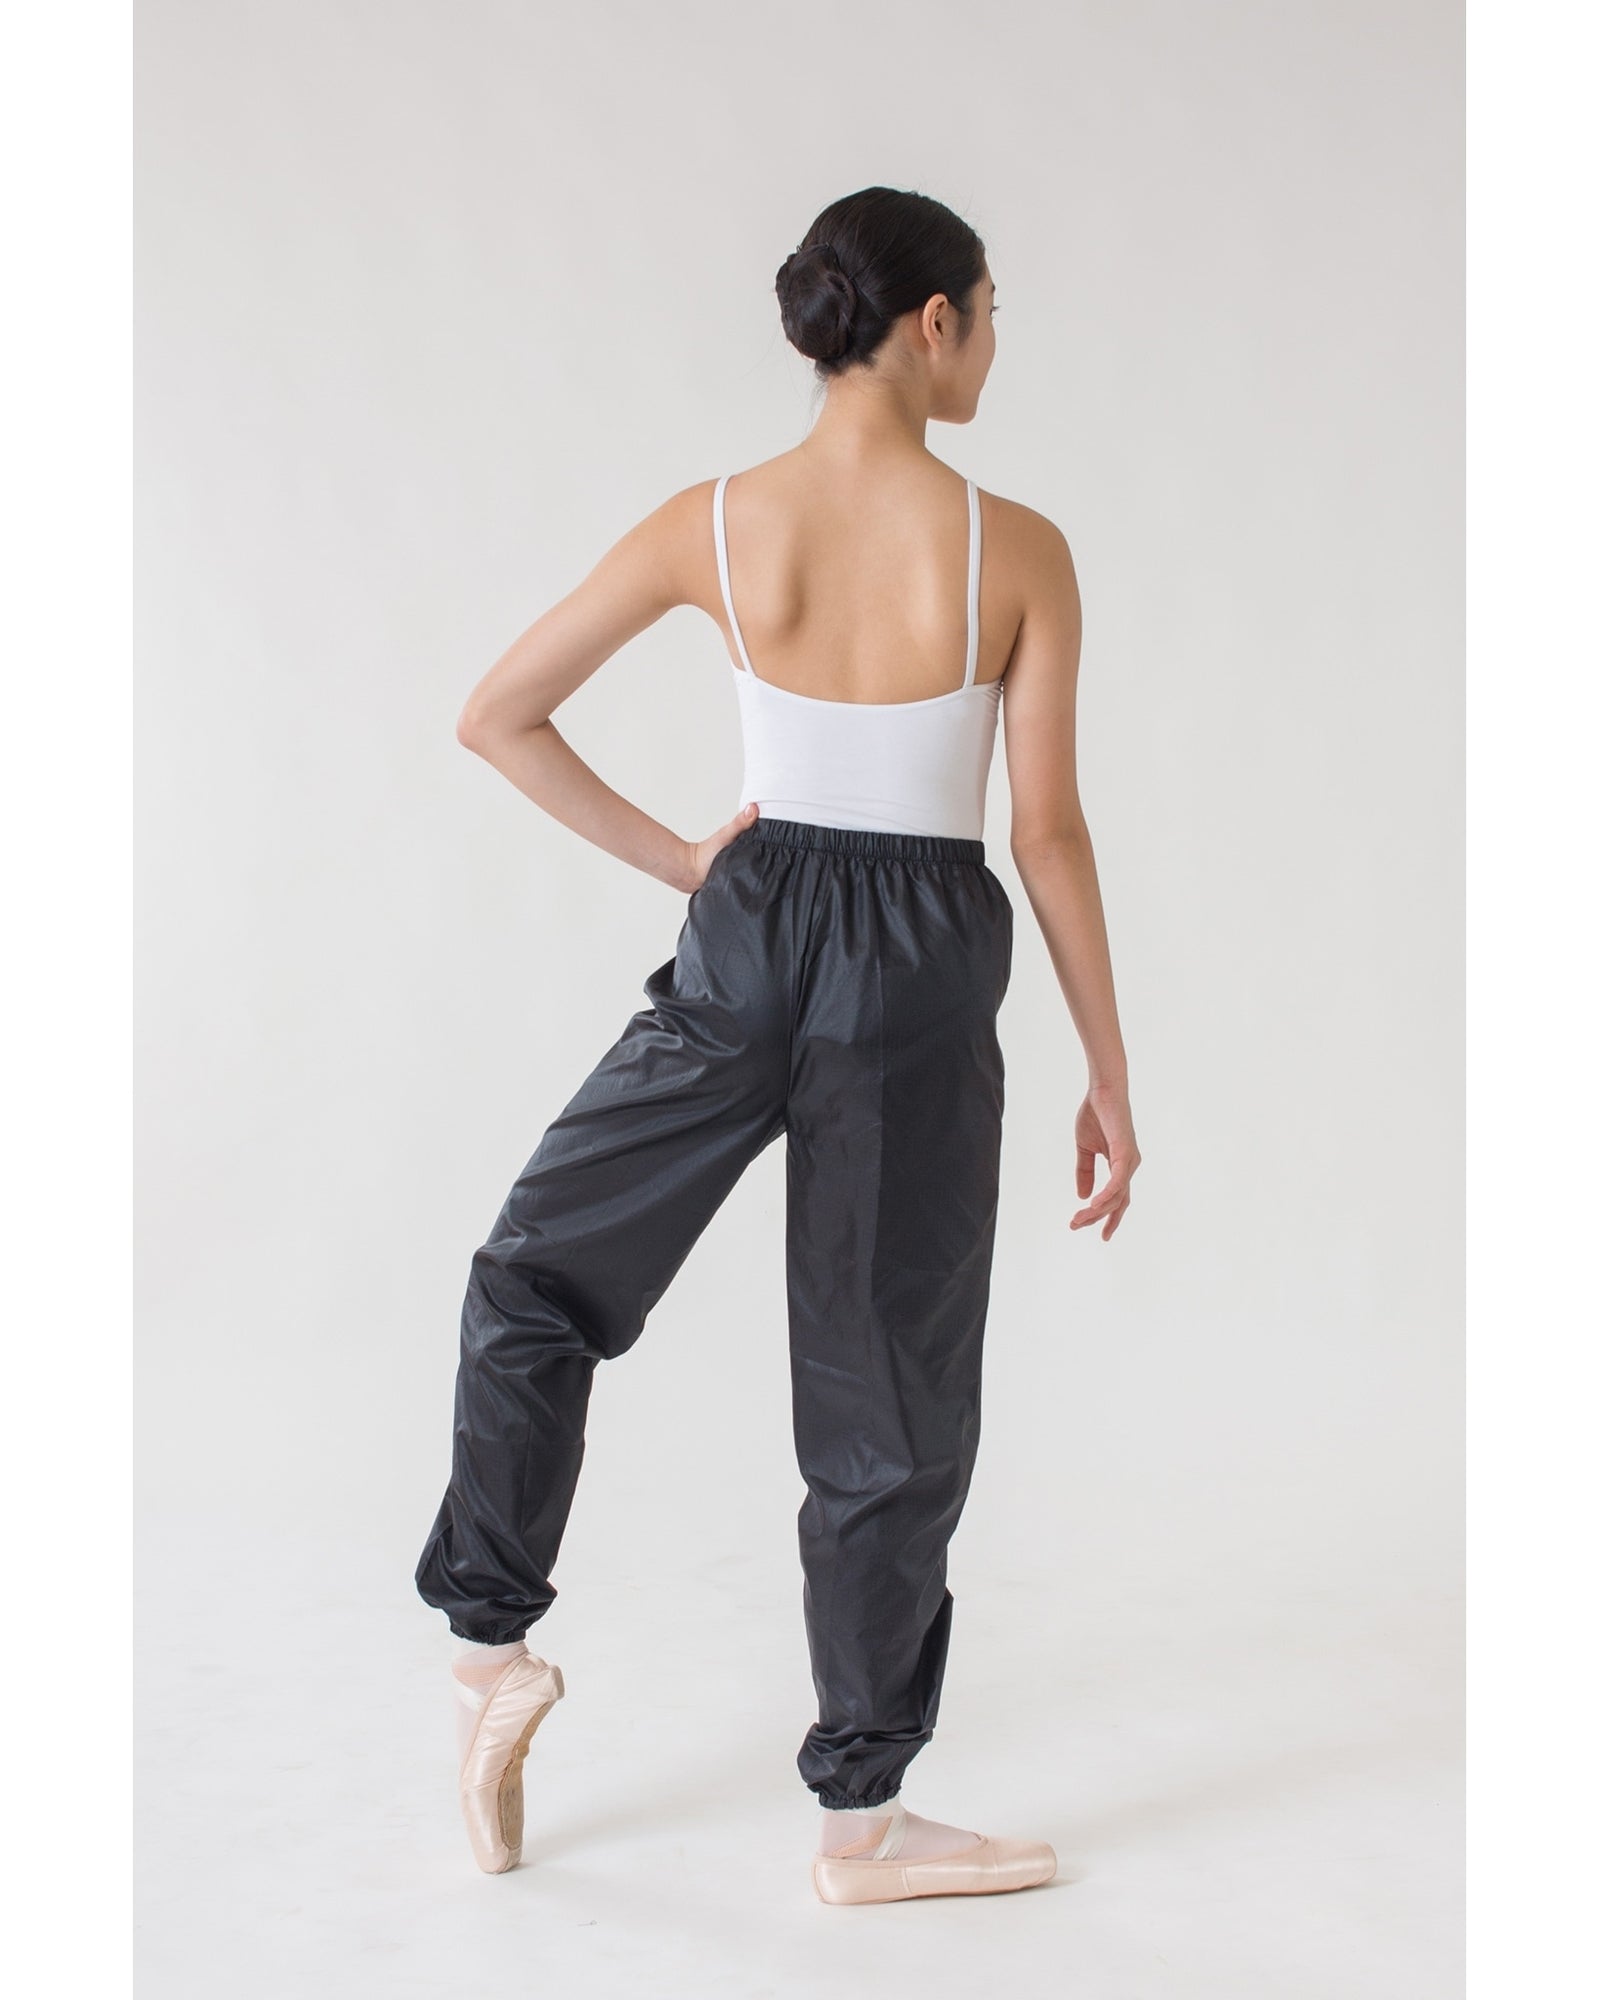 Dance Bottoms Canada: Shop Pants, Shorts Leggings, Sweatpants Online Tagged  Adult S - Dancewear Centre